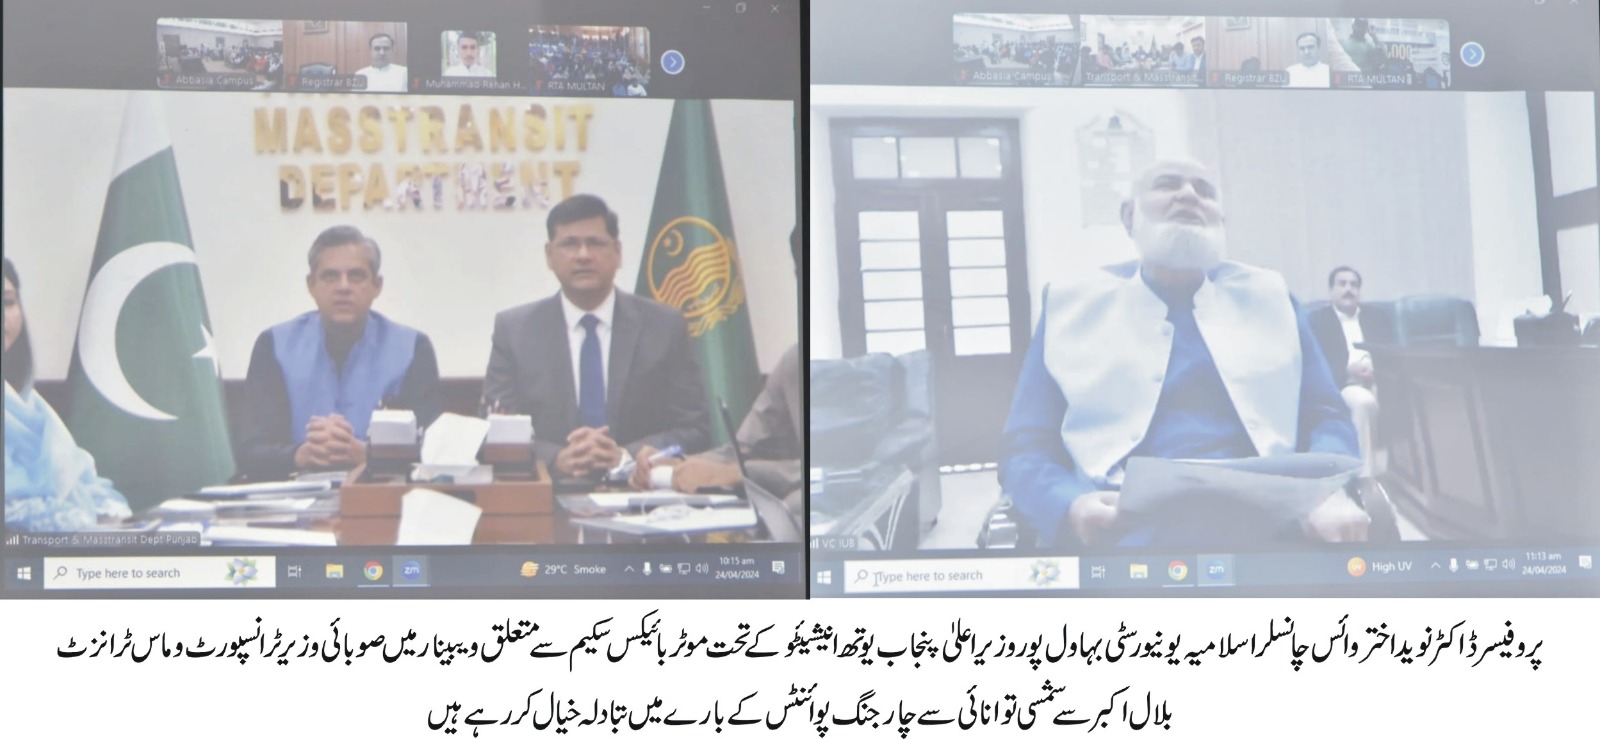 provinsial Transport mininster talk about IUB (urdu)